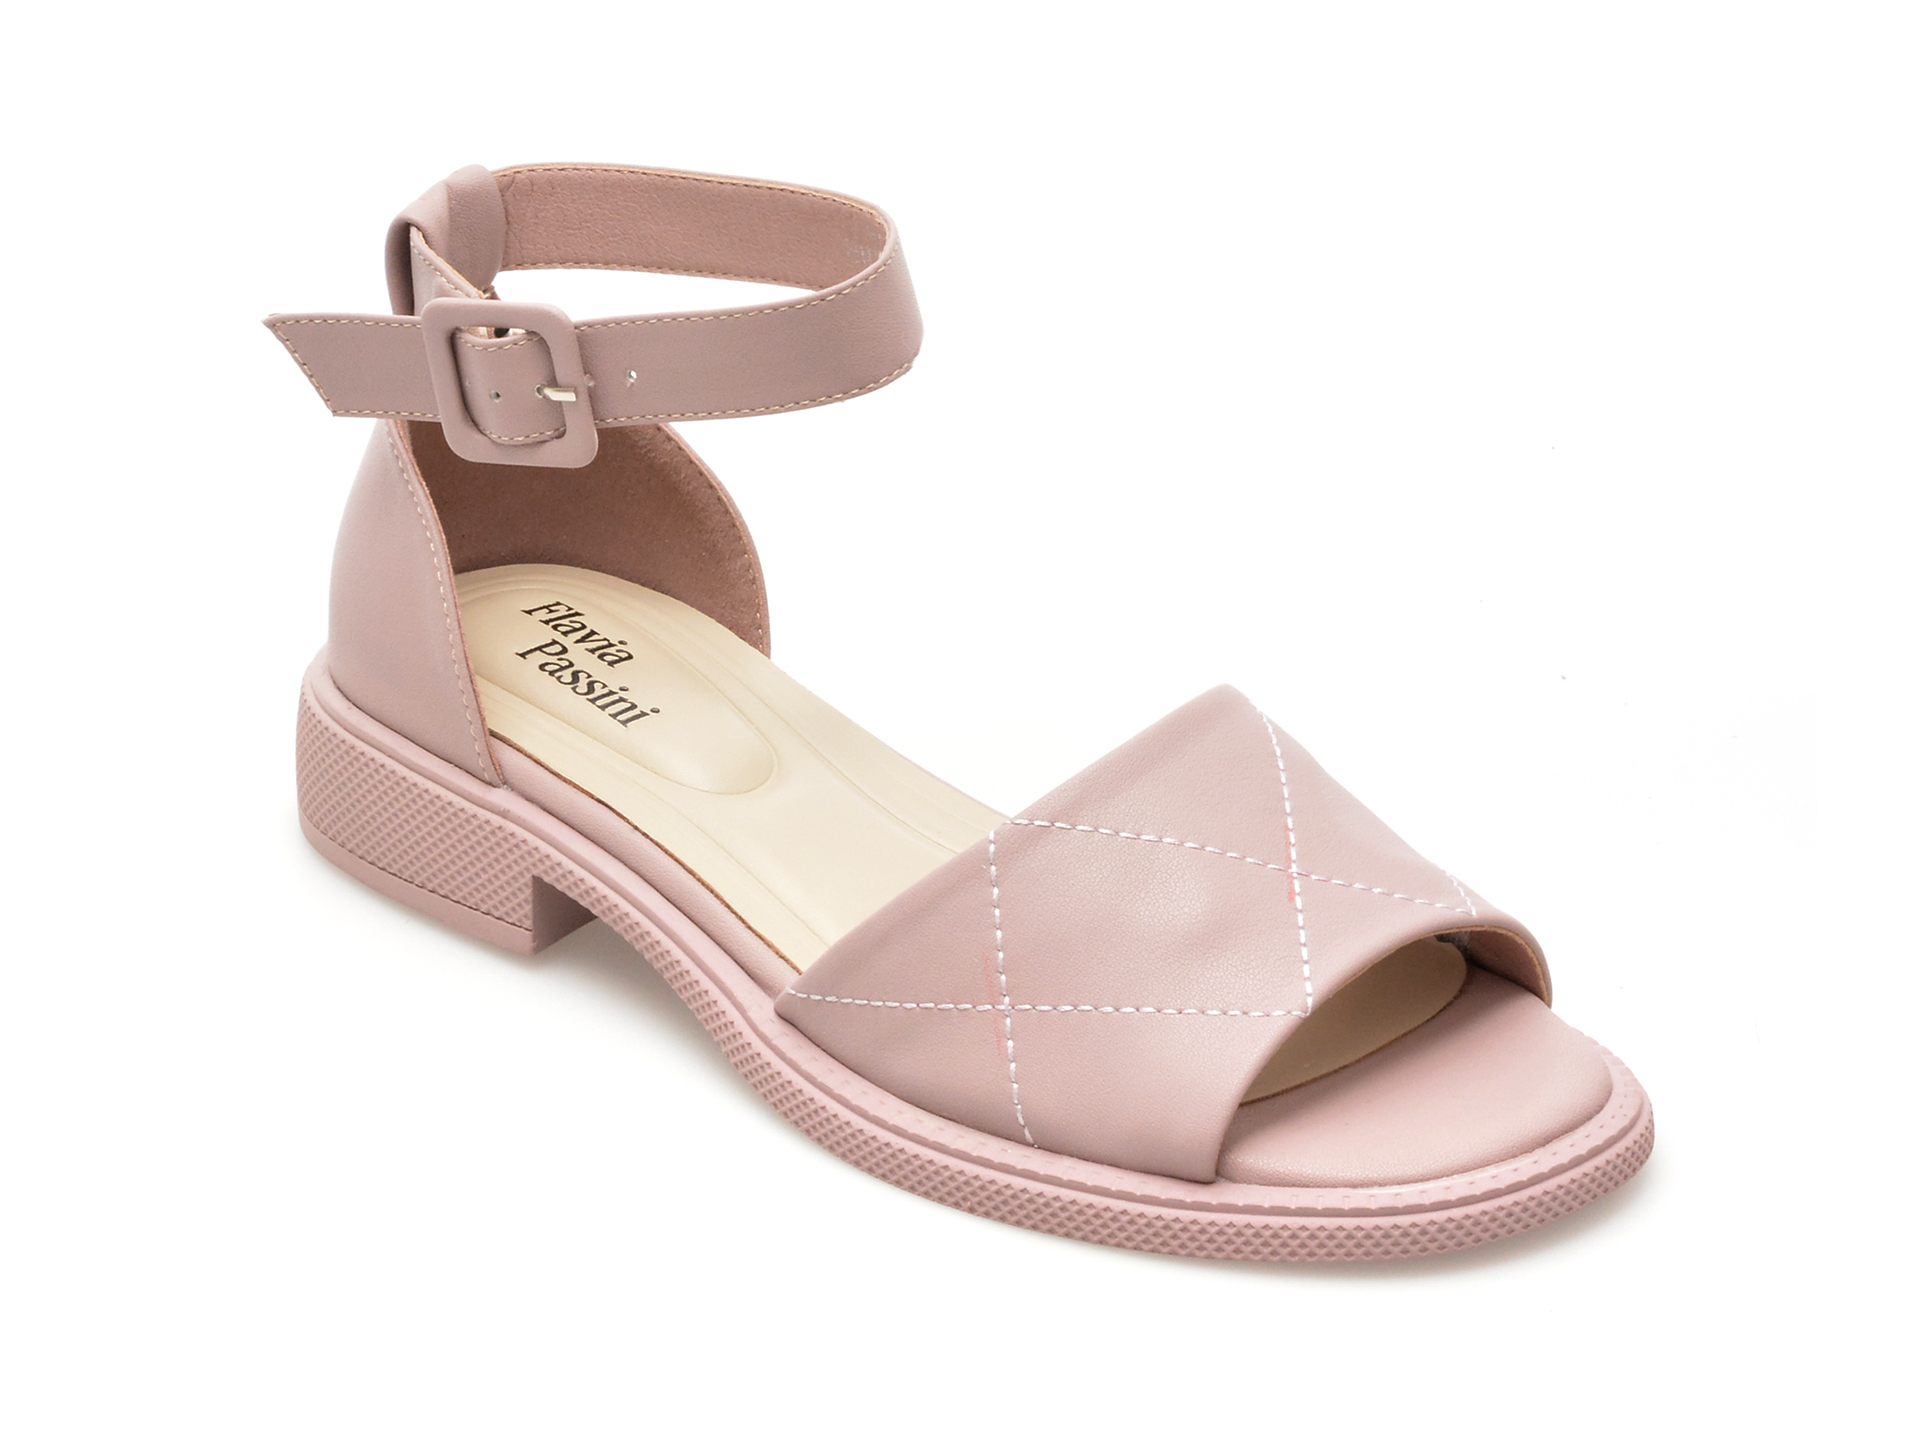 Sandale casual FLAVIA PASSINI roz, 62426, din piele naturala